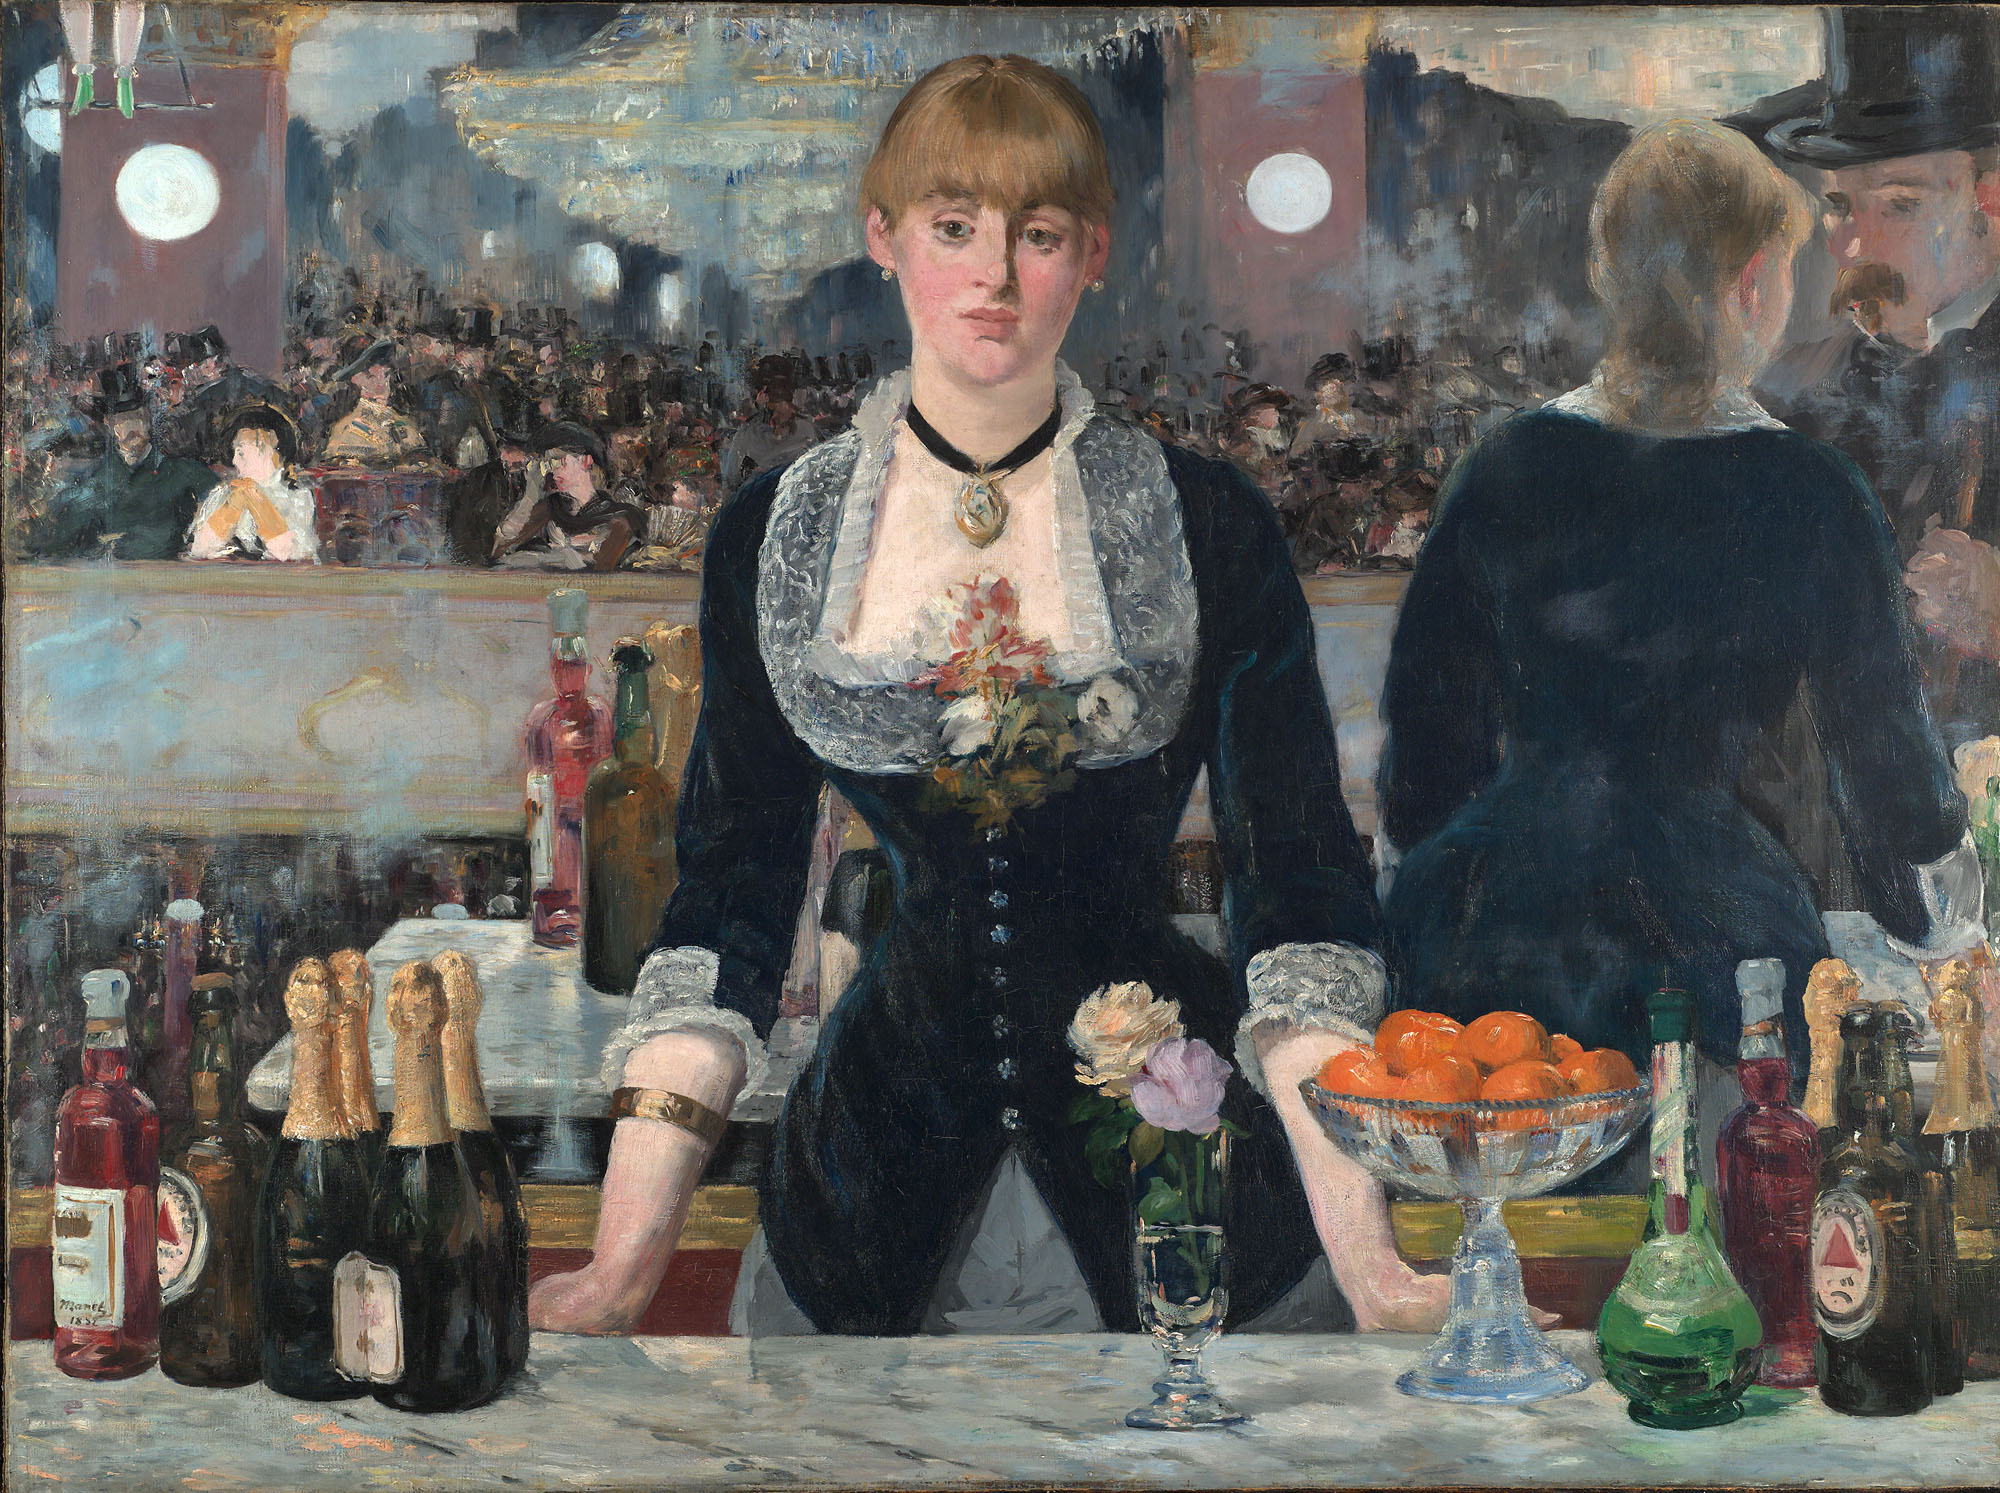 Bar ve Folies-Bergère by Édouard Manet - 1882 - 96 × 130 cm 